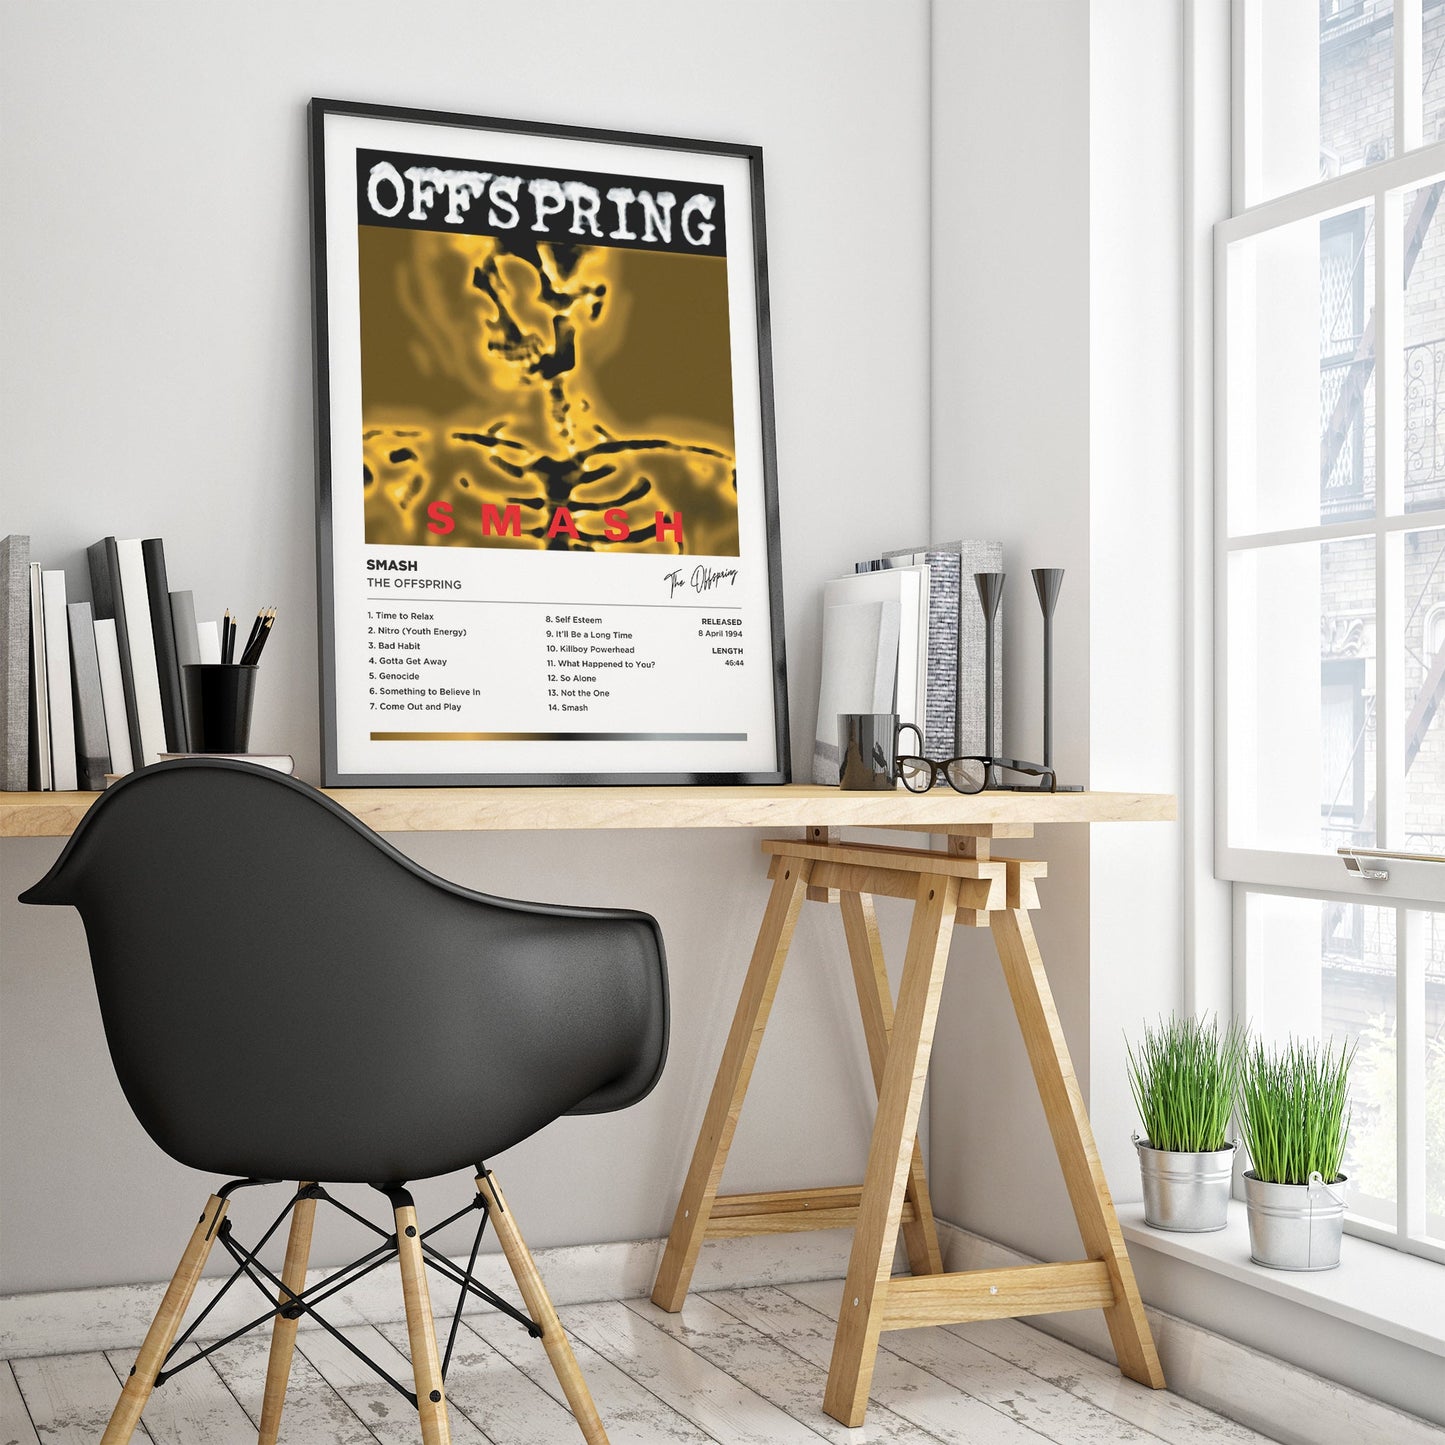 The Offspring - Smash Framed Poster Print | Polaroid Style | Album Cover Artwork